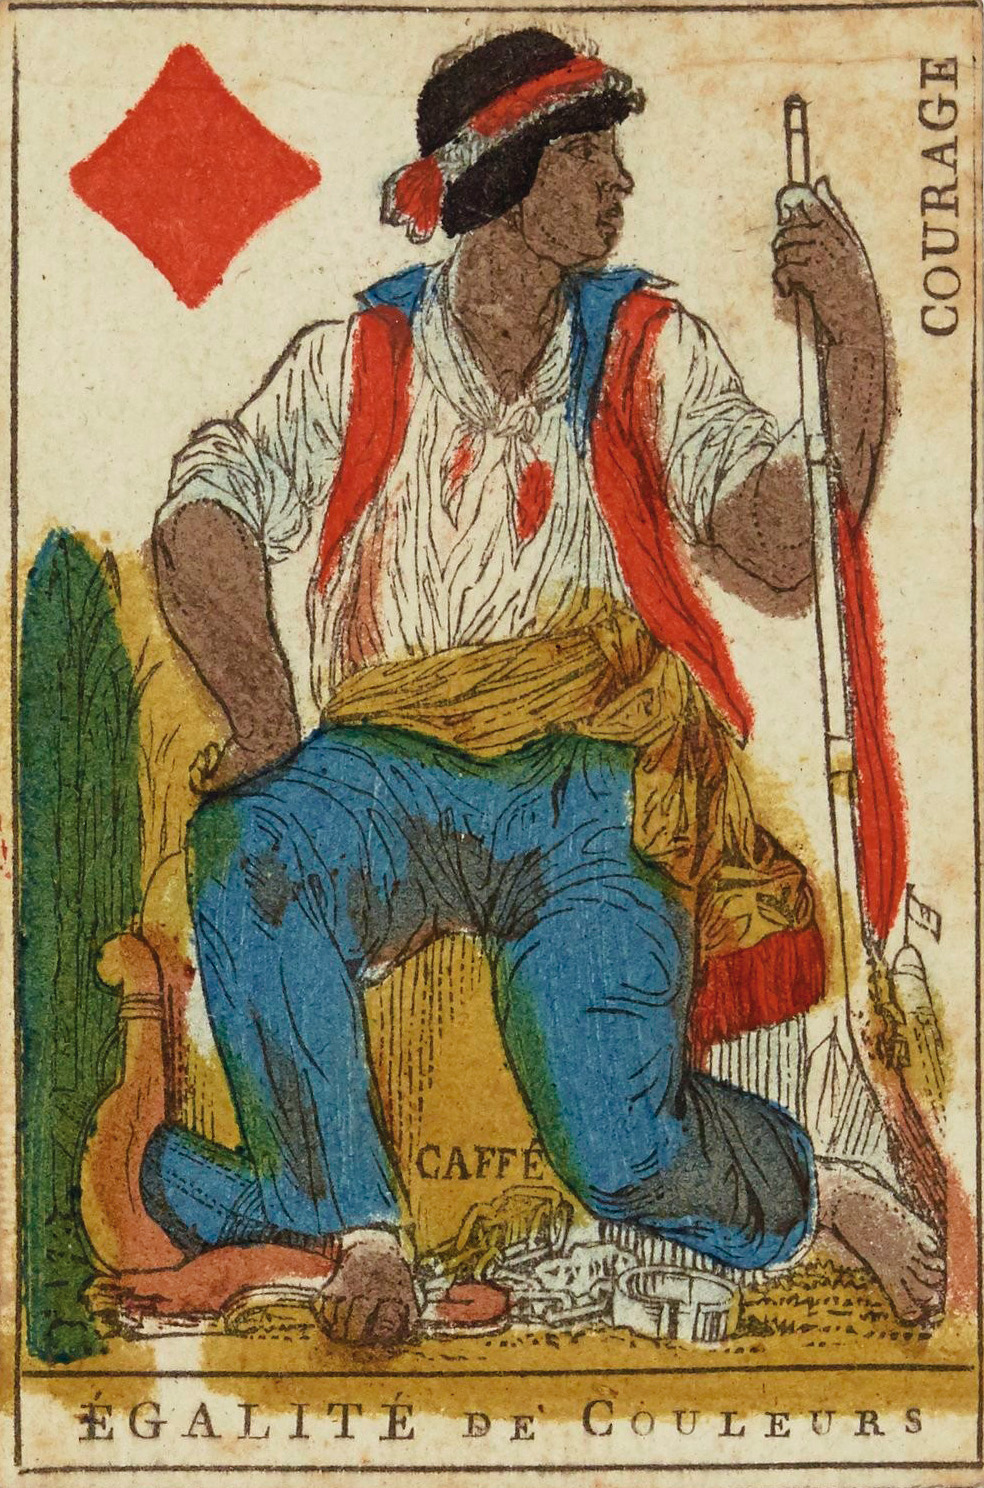  Pieza incluida en un juego de naipes distribuido en Francia, en 1793. © bibliothèque nationale de france